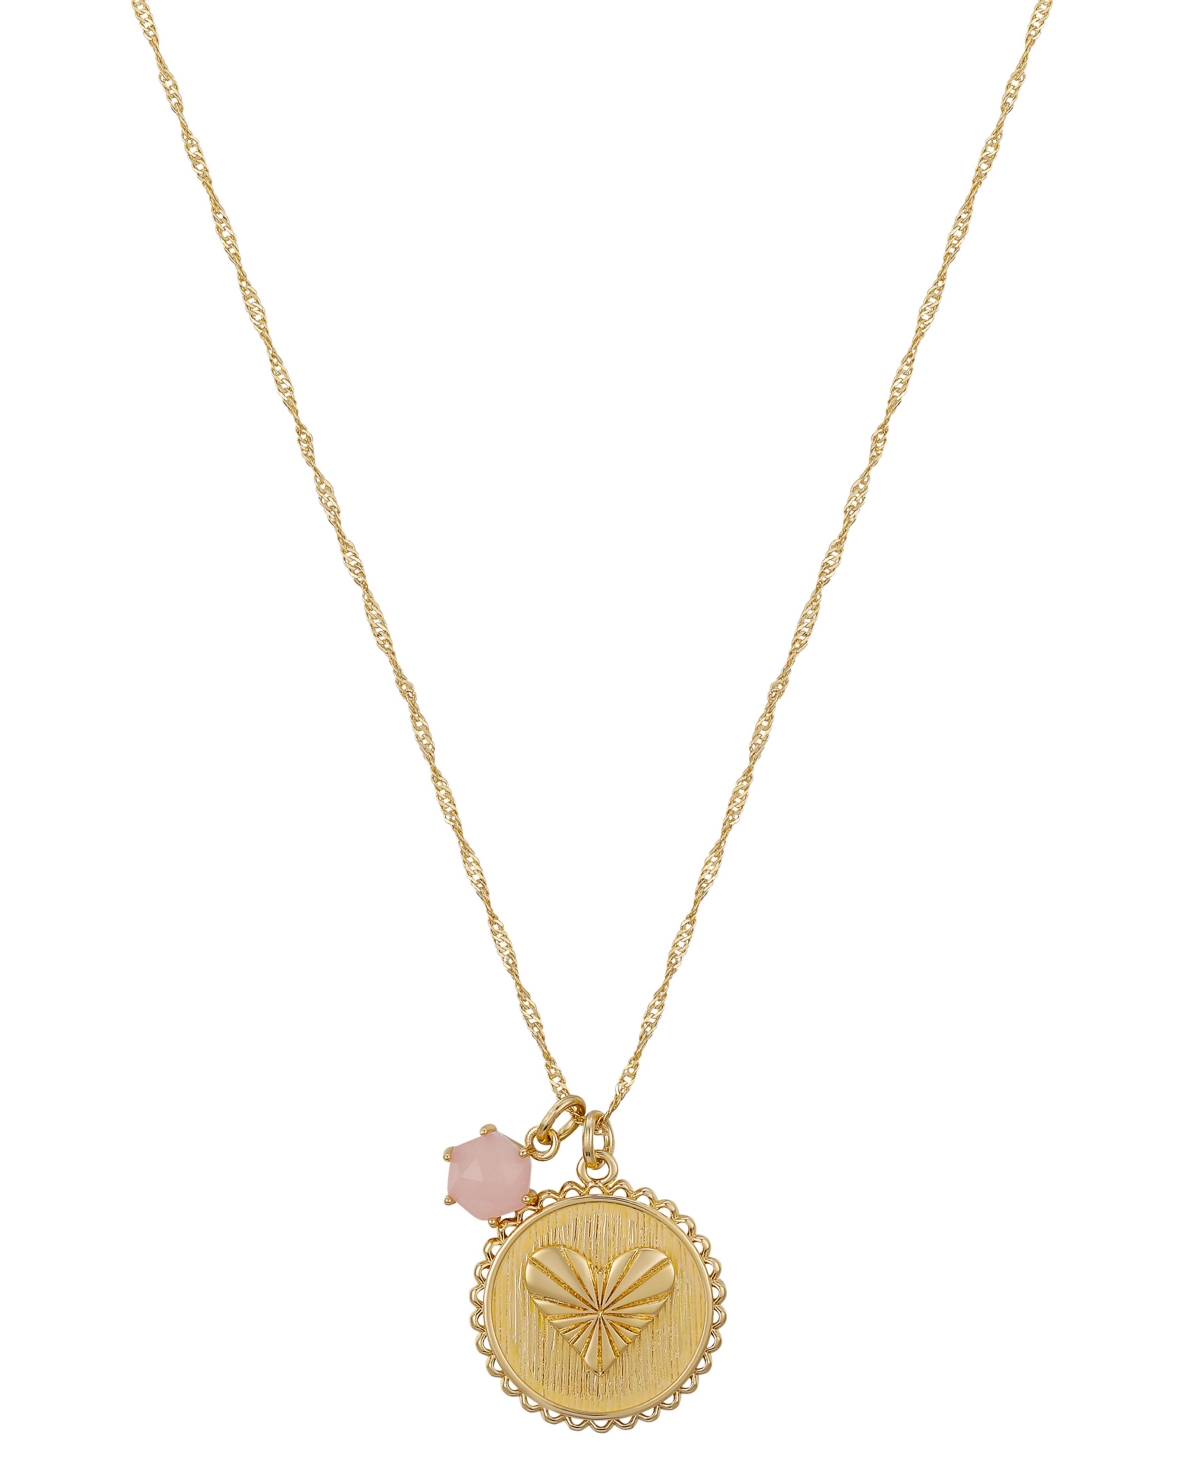 Charm necklace: rose quartz